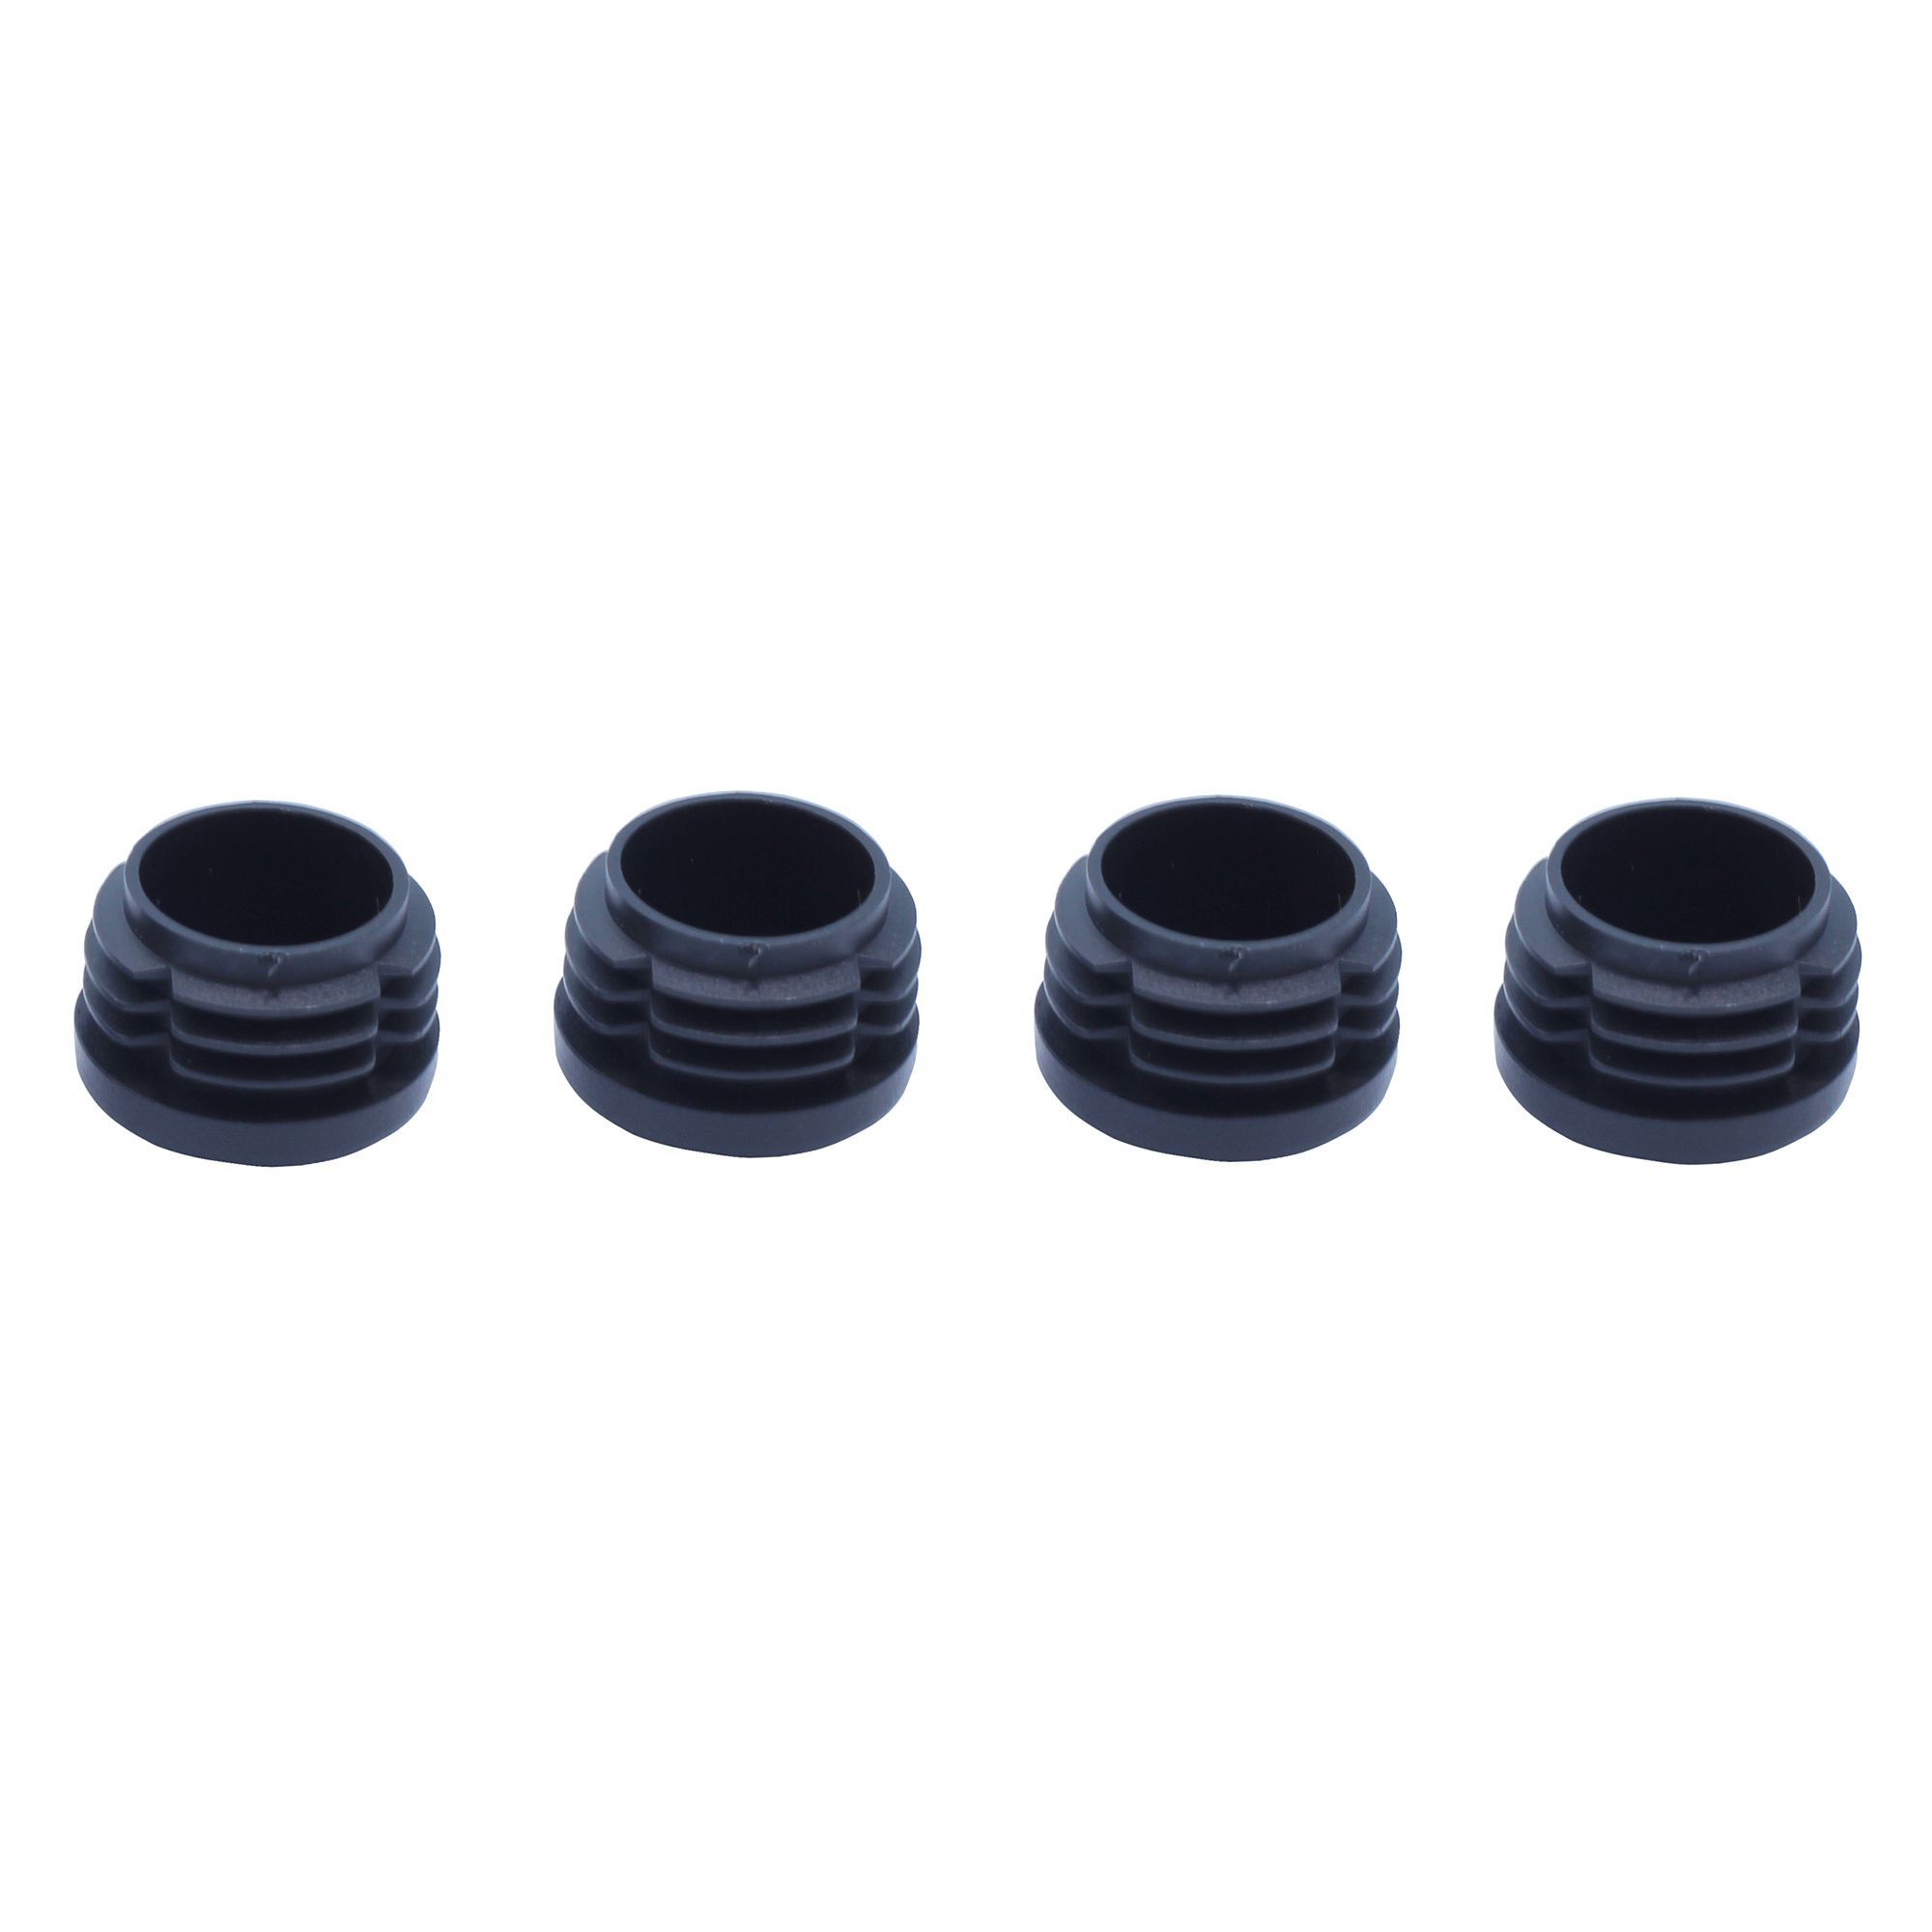 Black Plastic Insert cap (Dia)21mm, Pack of 4